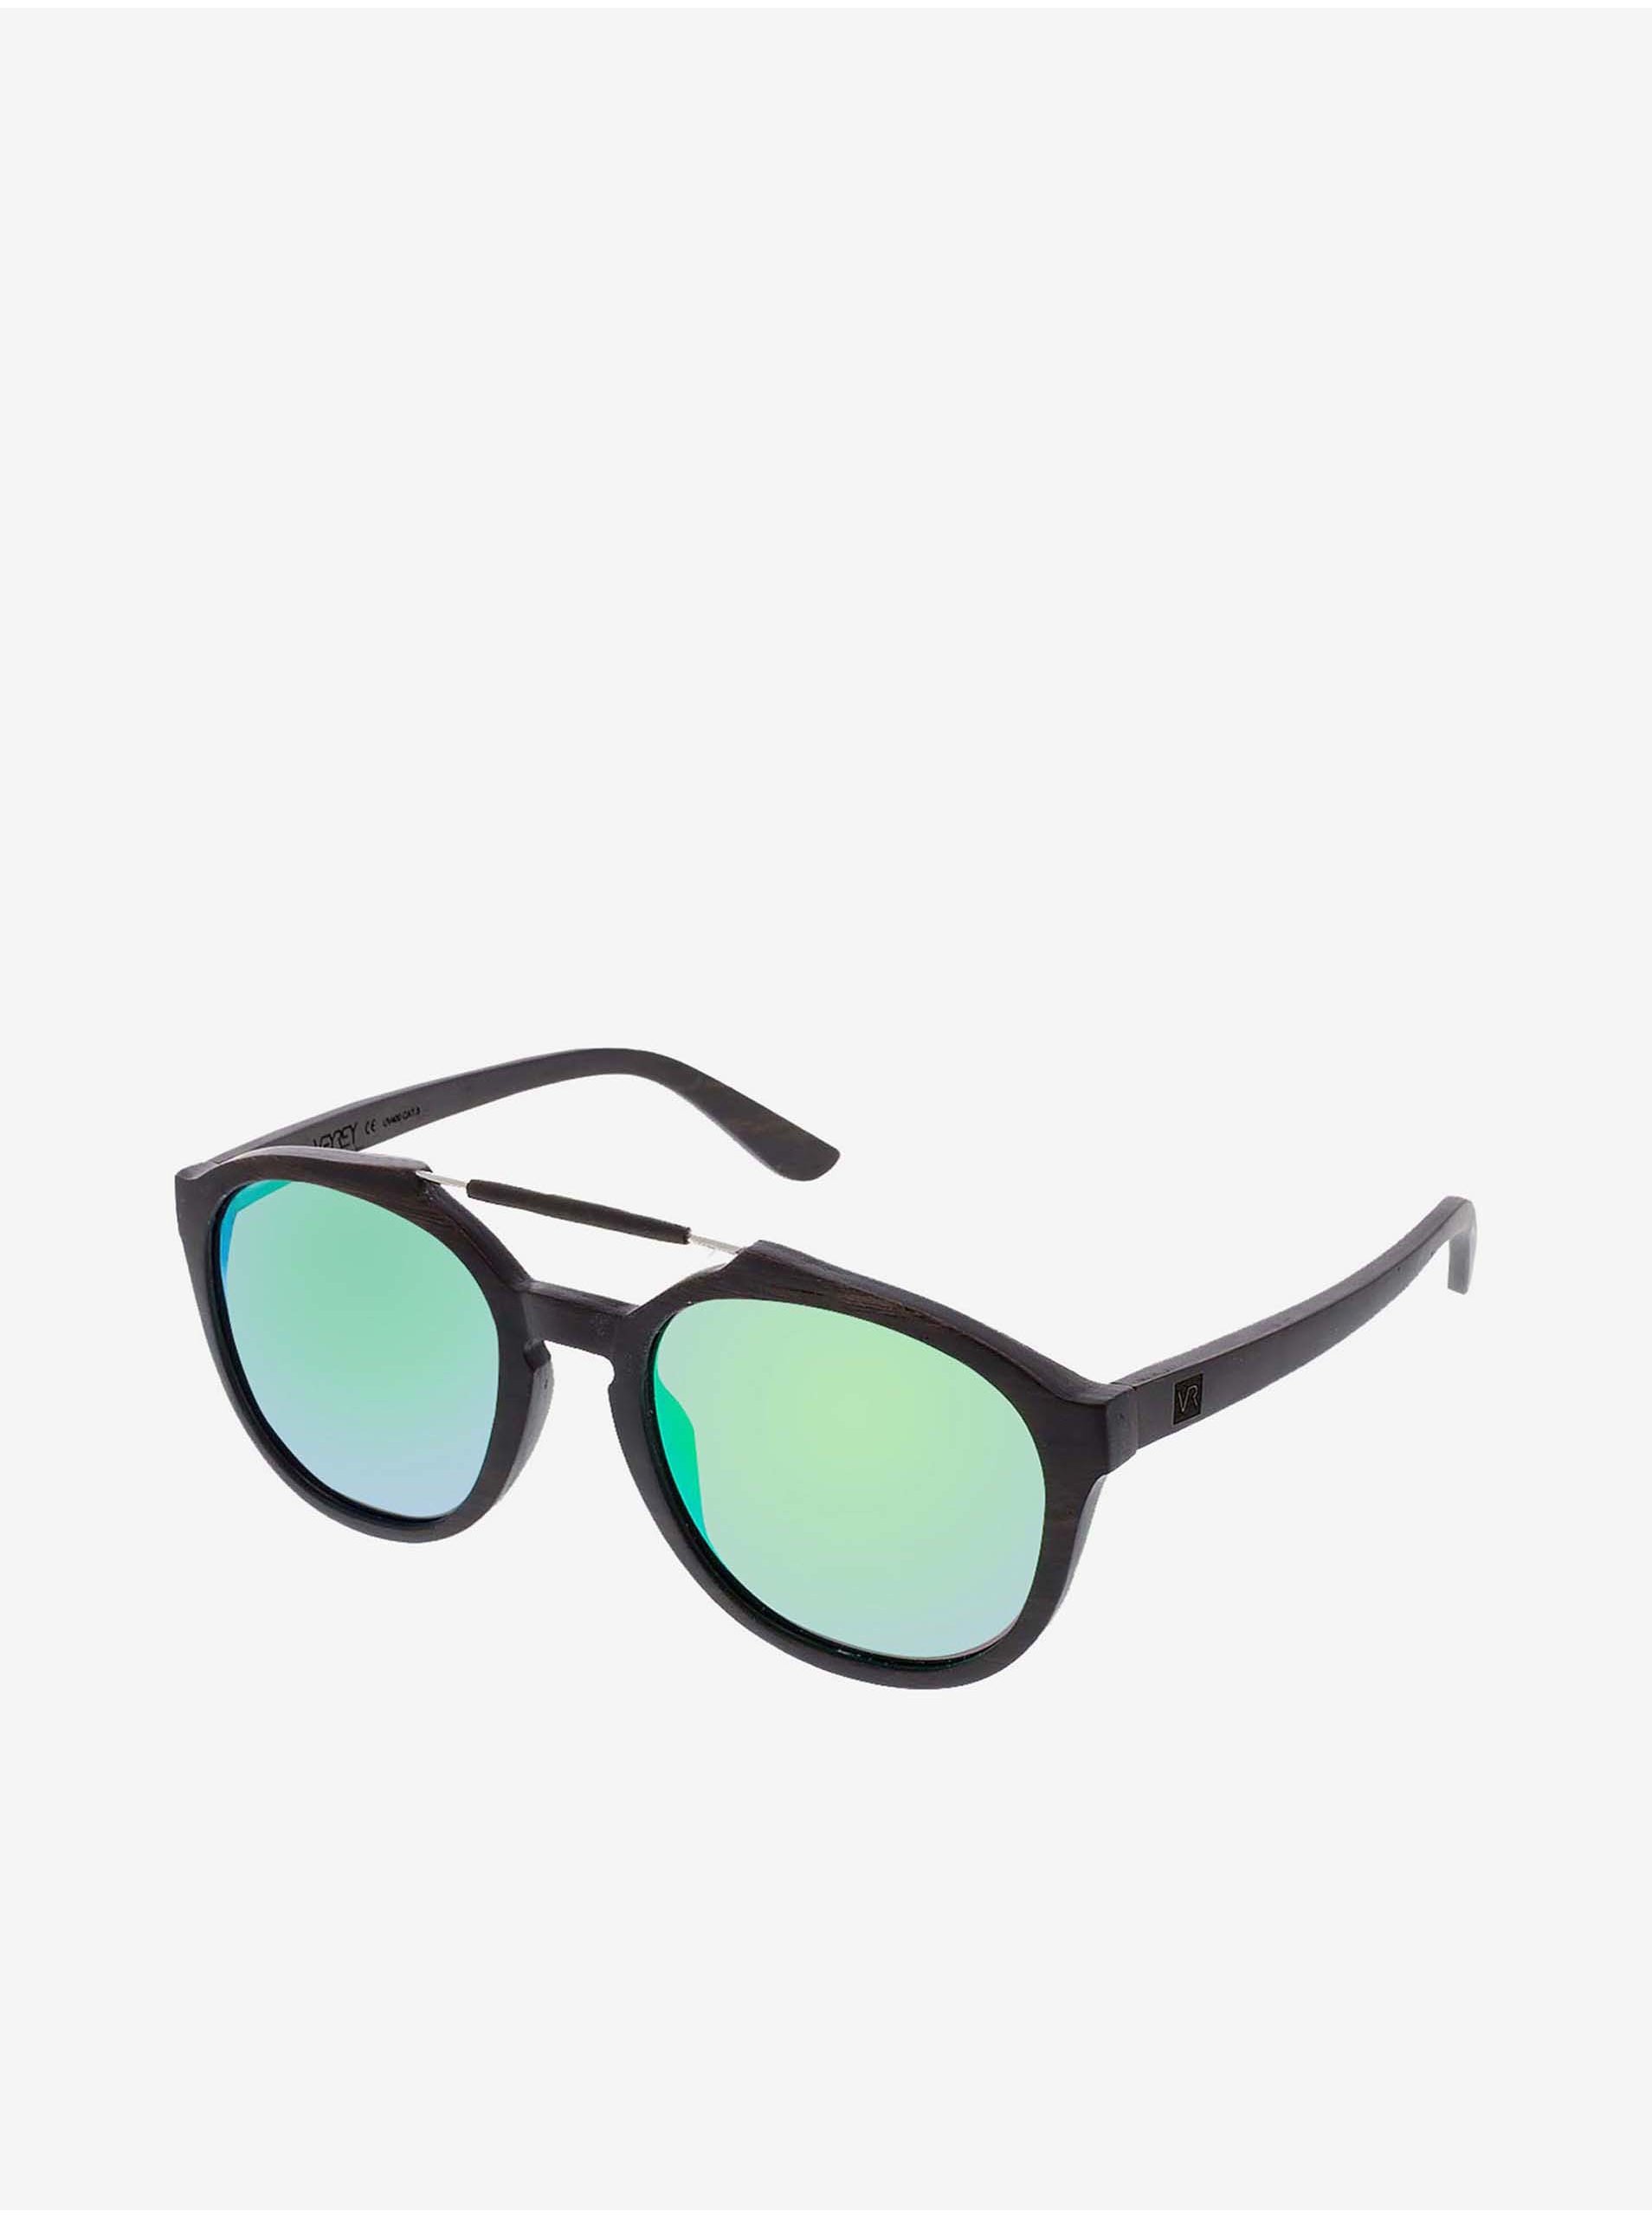 Lacno VeyRey Slnečné okuliare drevené polarizačné oválne Maple zelené